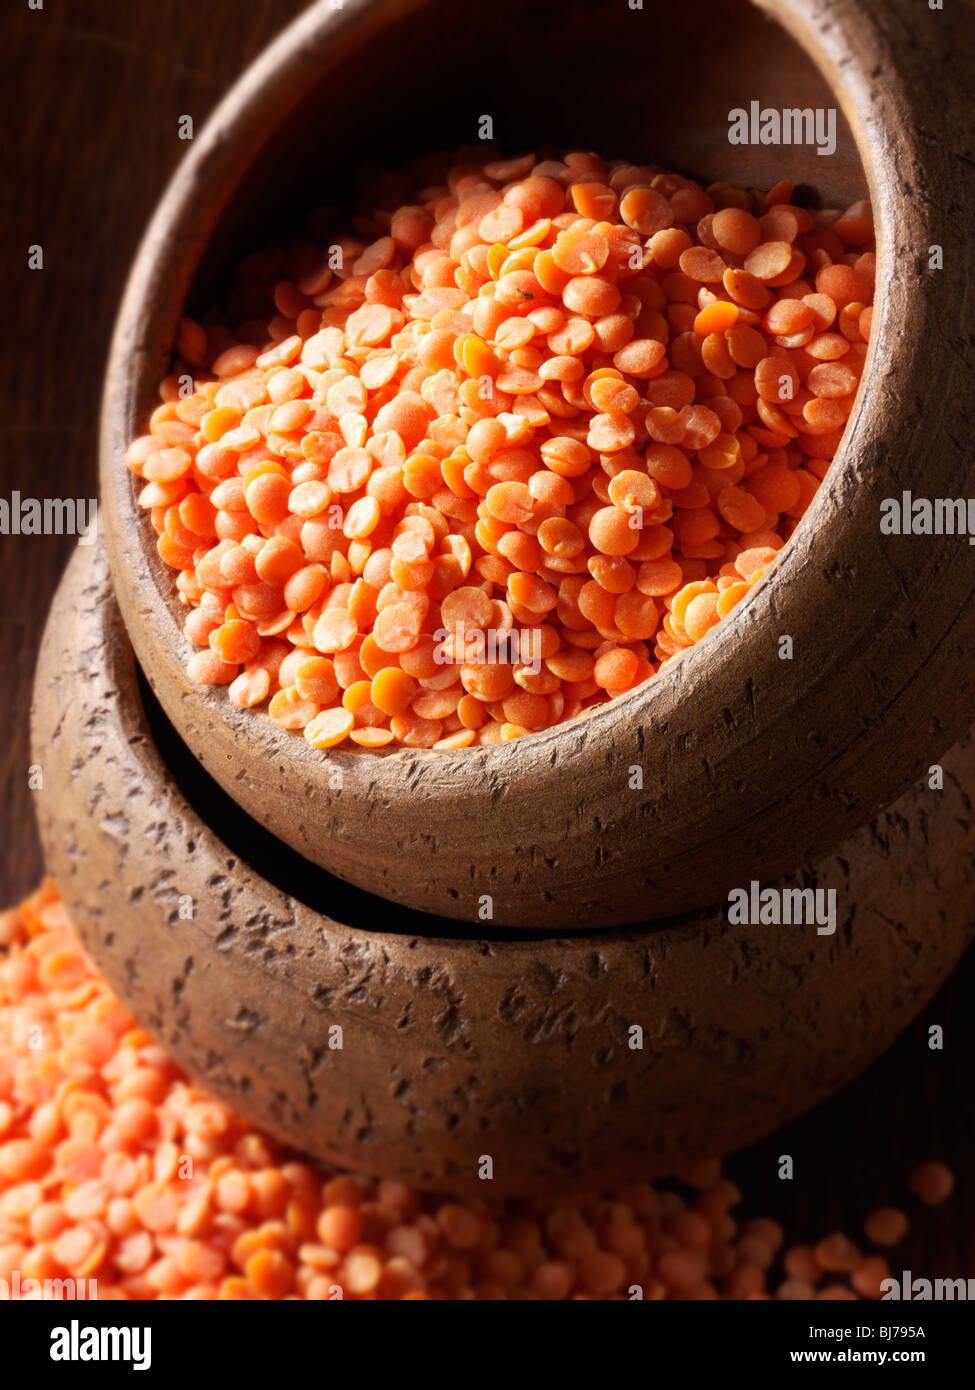 Whole dried orange lentil beans - close up Stock Photo